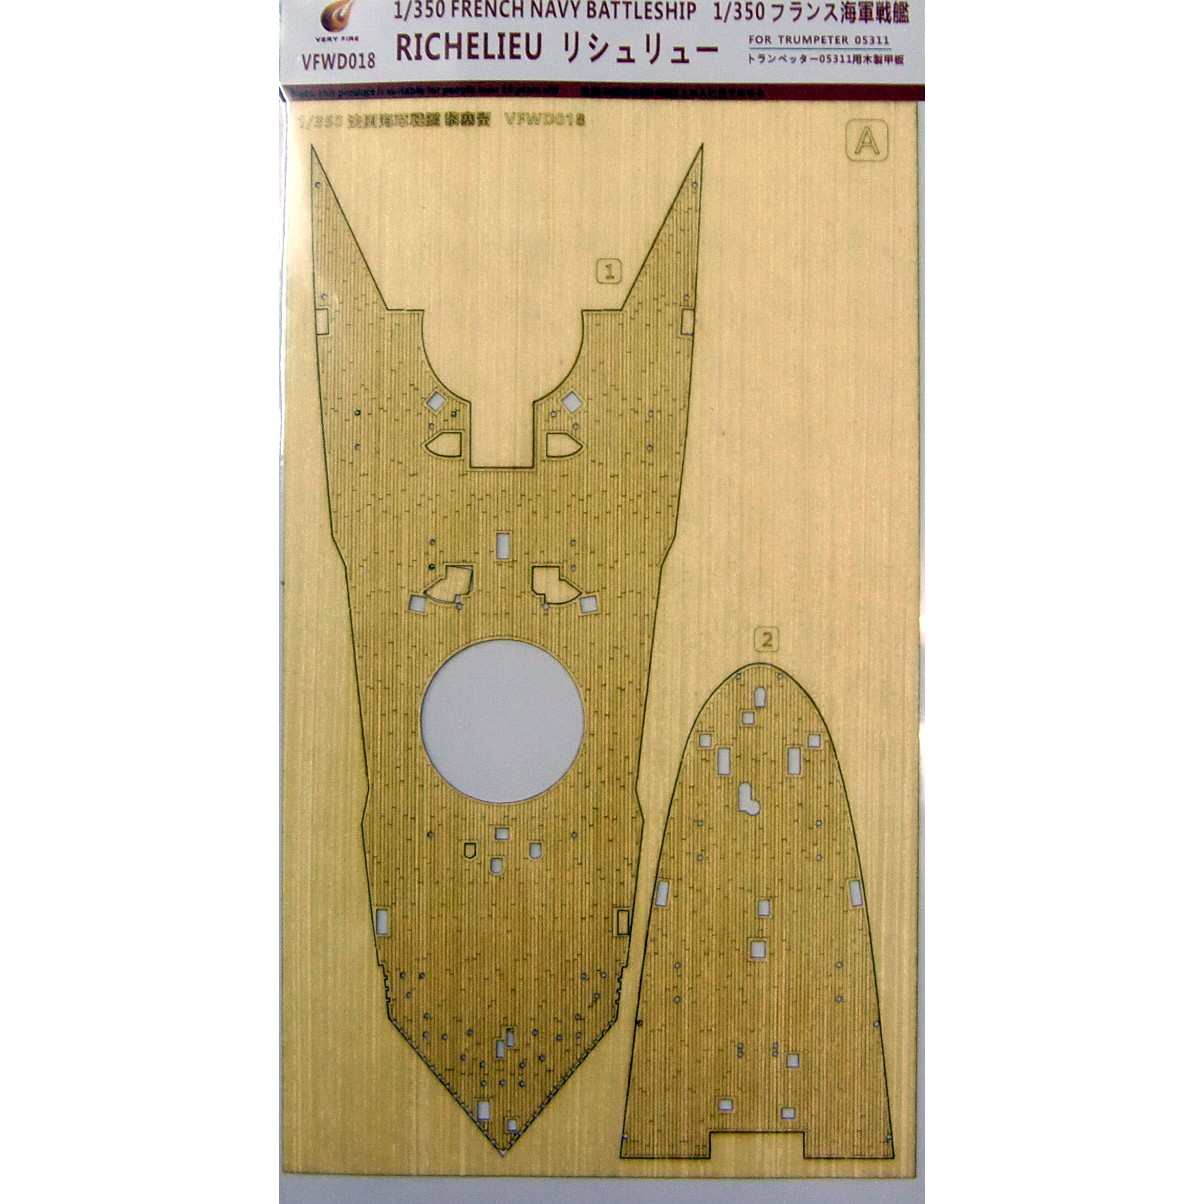 【新製品】VFWD018 仏海軍 戦艦 リシュリュー用 木製甲板